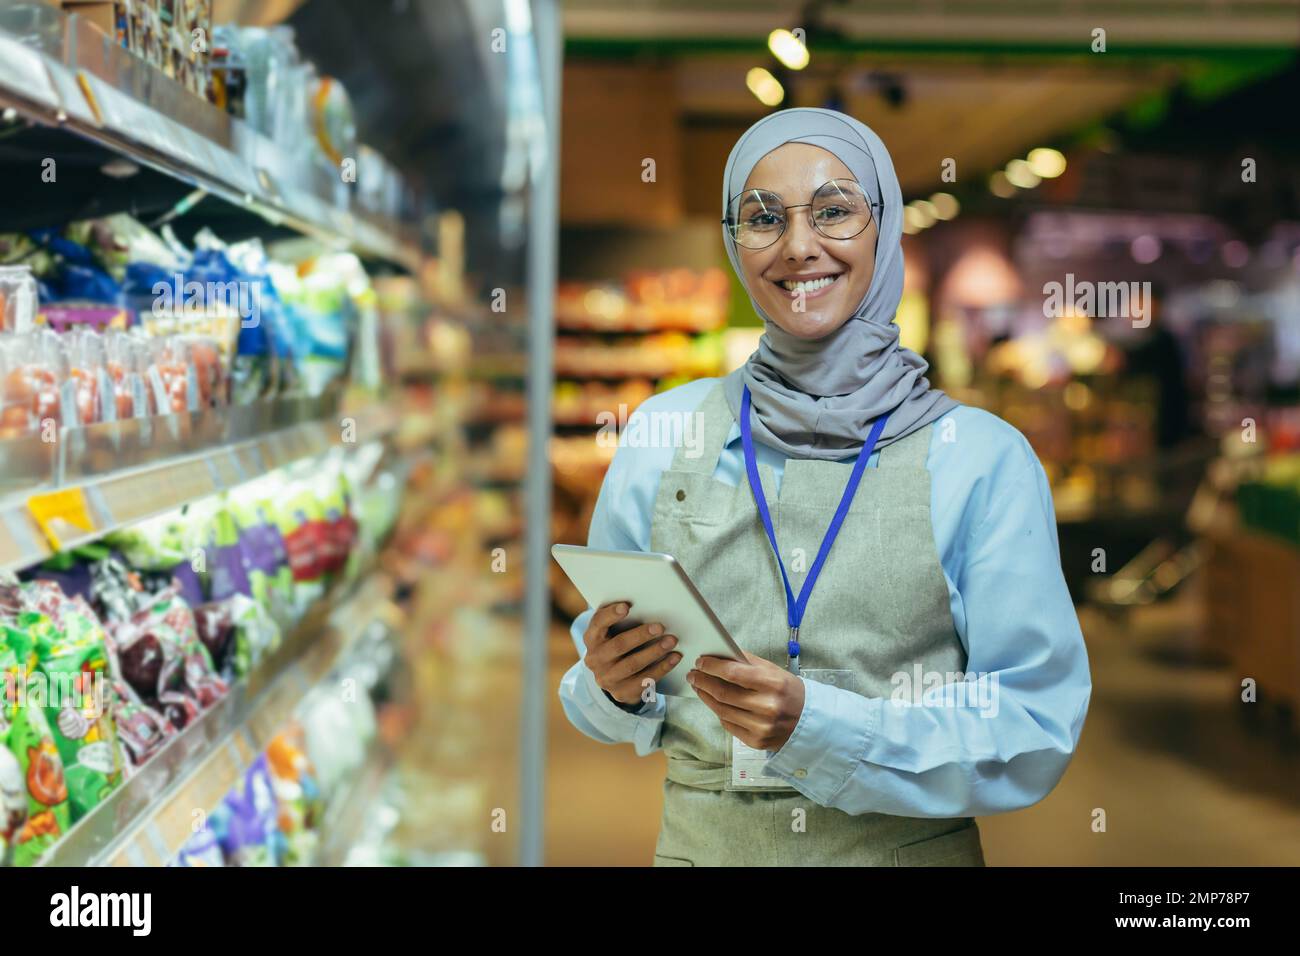 Une jeune femme arabe dans un hijab travaille dans un supermarché, vendeur, consultant, gestionnaire. Debout avec un dossier dans ses mains et un badge dans le rayon épicerie. Il regarde la caméra, sourit. Banque D'Images